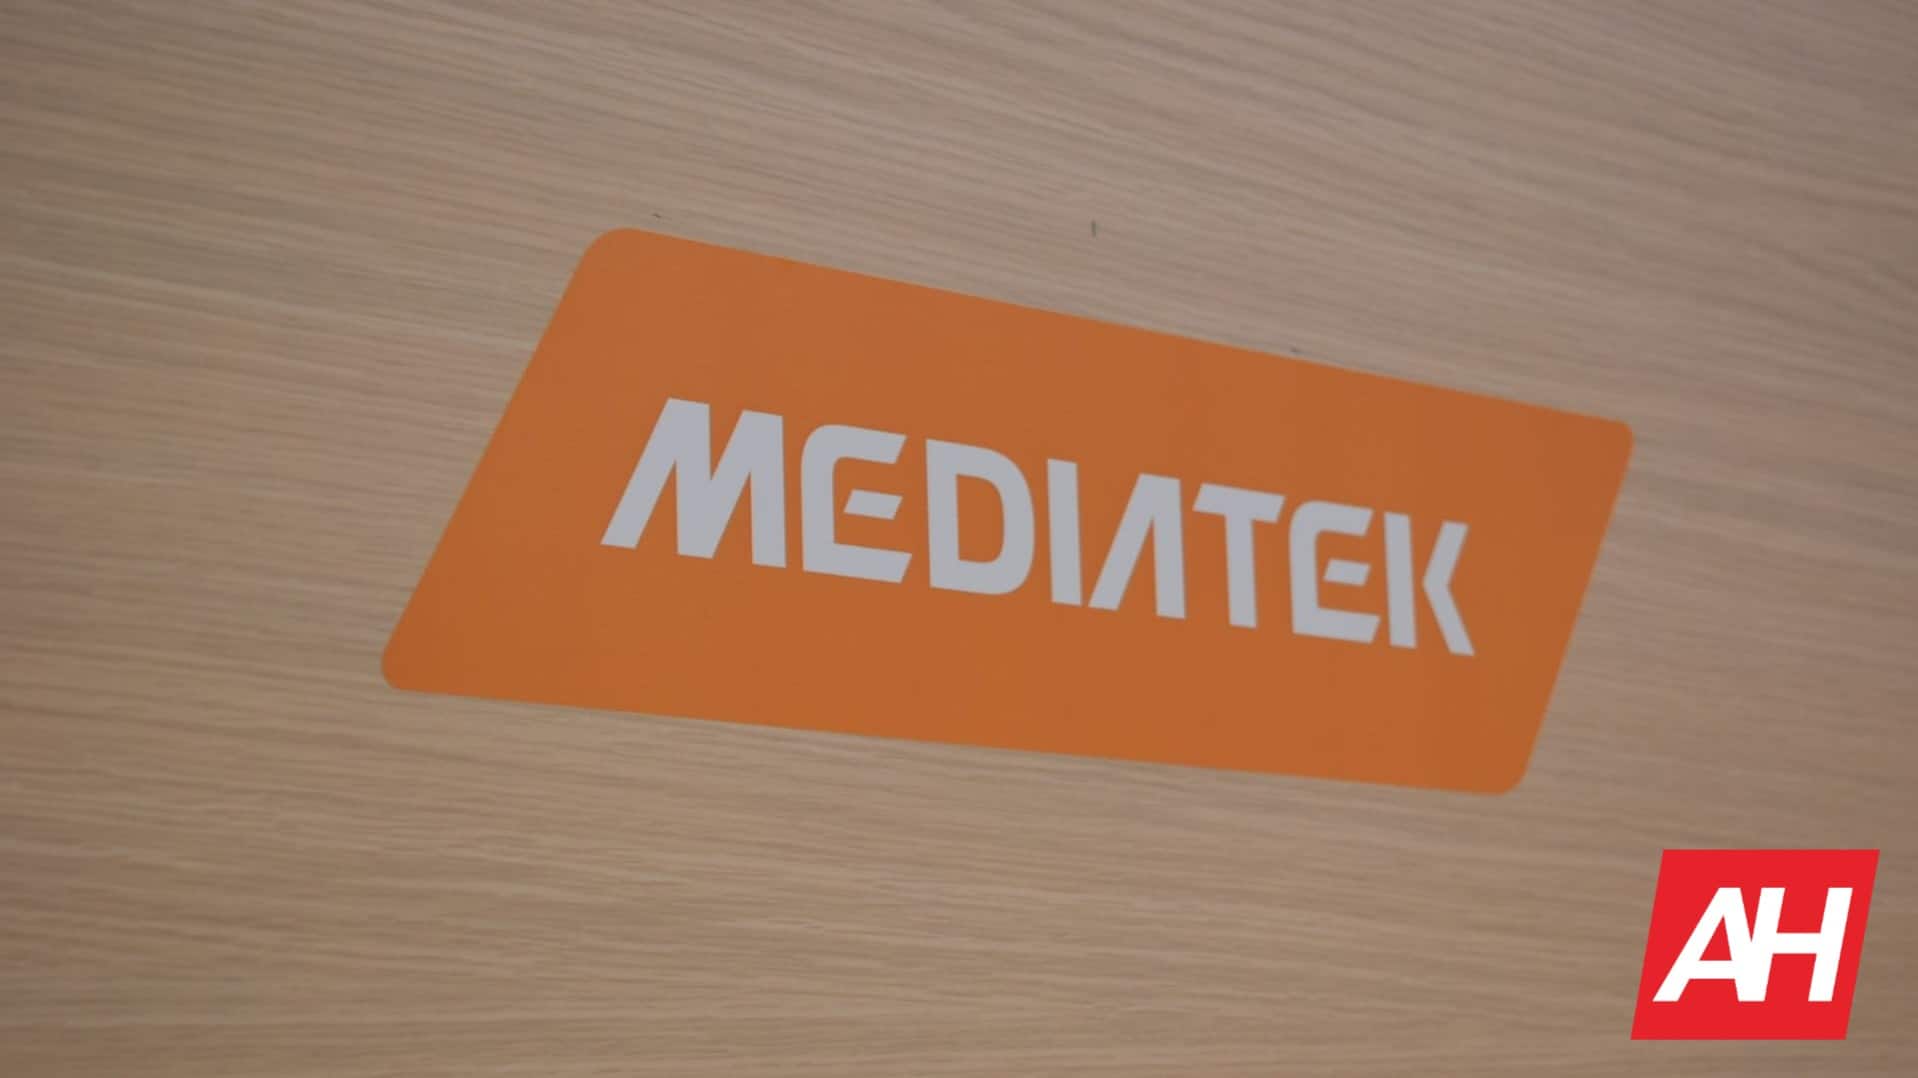 MediaTek была крупнейшим поставщиком чипсетов для смартфонов в 2020 году: OMDIA